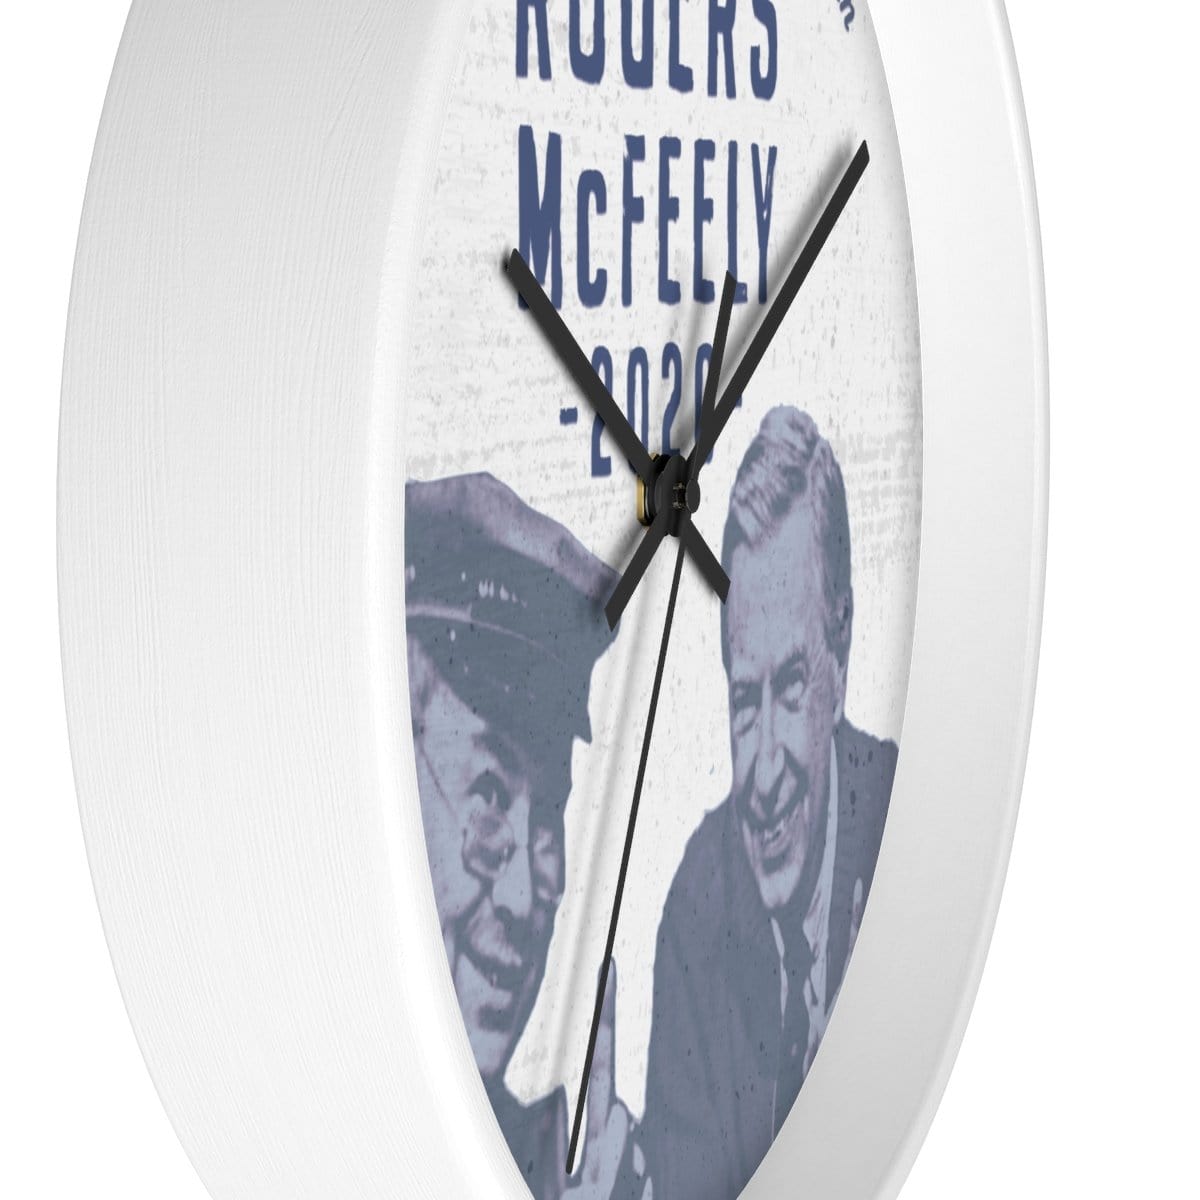 "Rogers/McFeely 2020" Wall clock - True Blue Gear